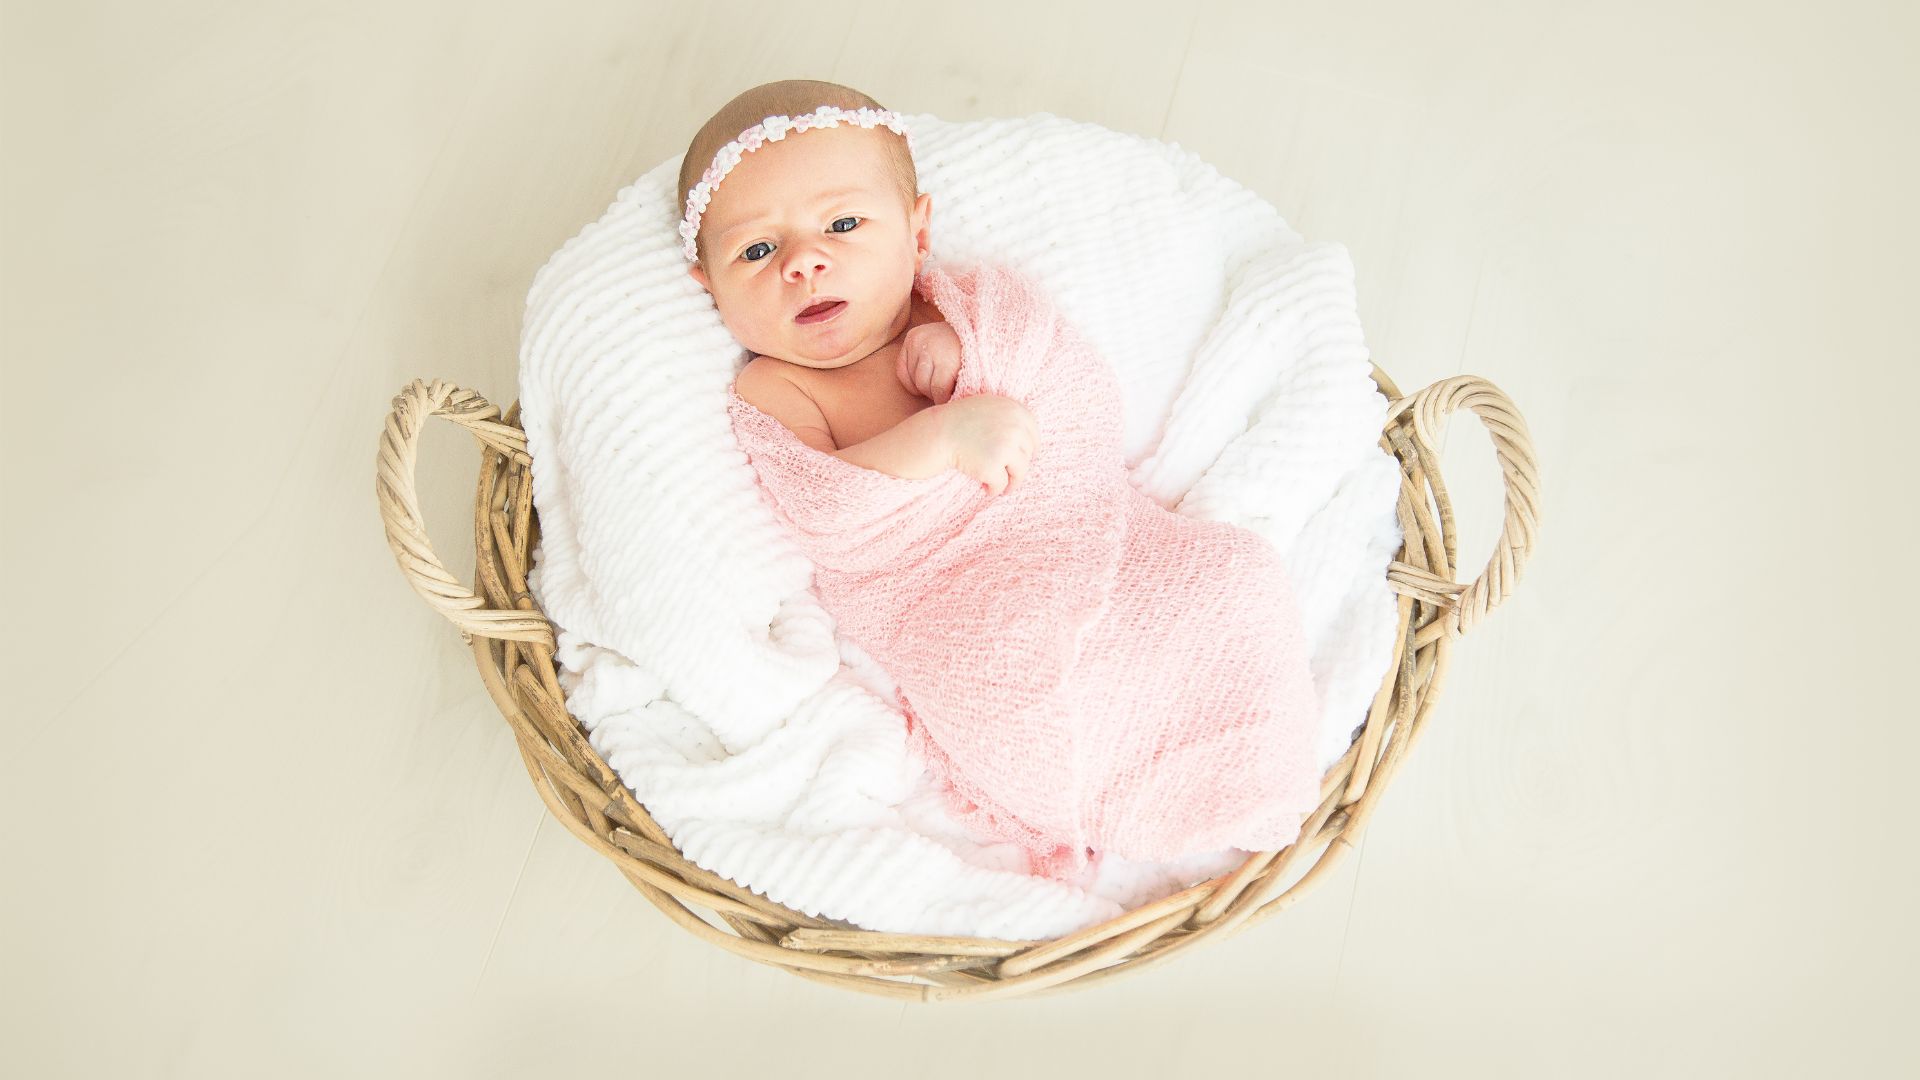 How soon should you do newborn photos